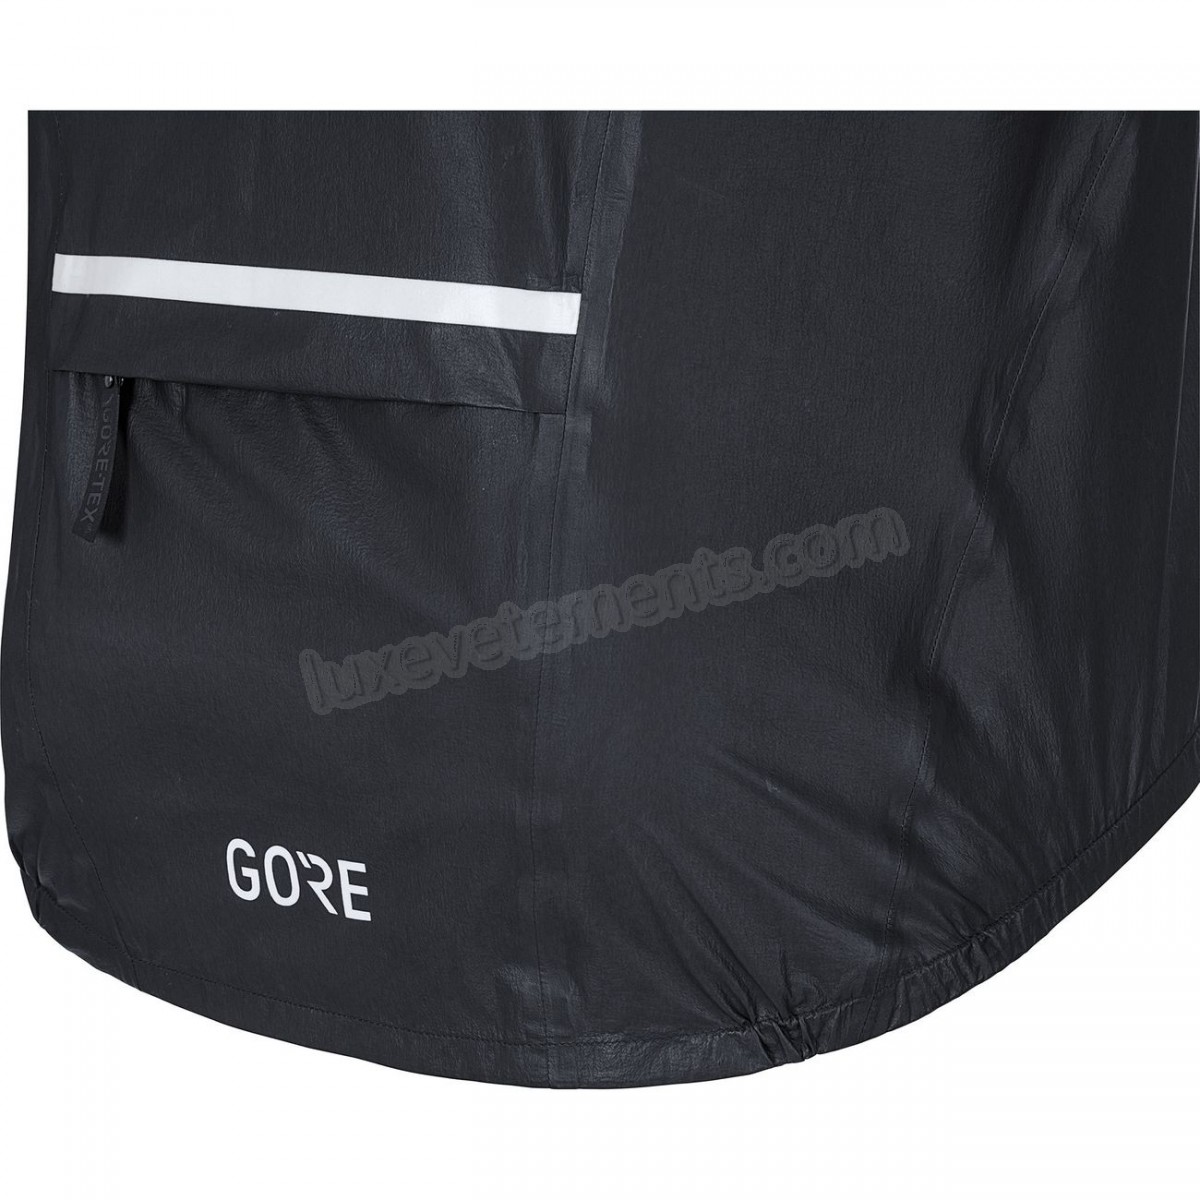 Gore-Cyclisme sur route homme GORE Imperméable Gore-Tex C5 1985 Insulated Vente en ligne - -2